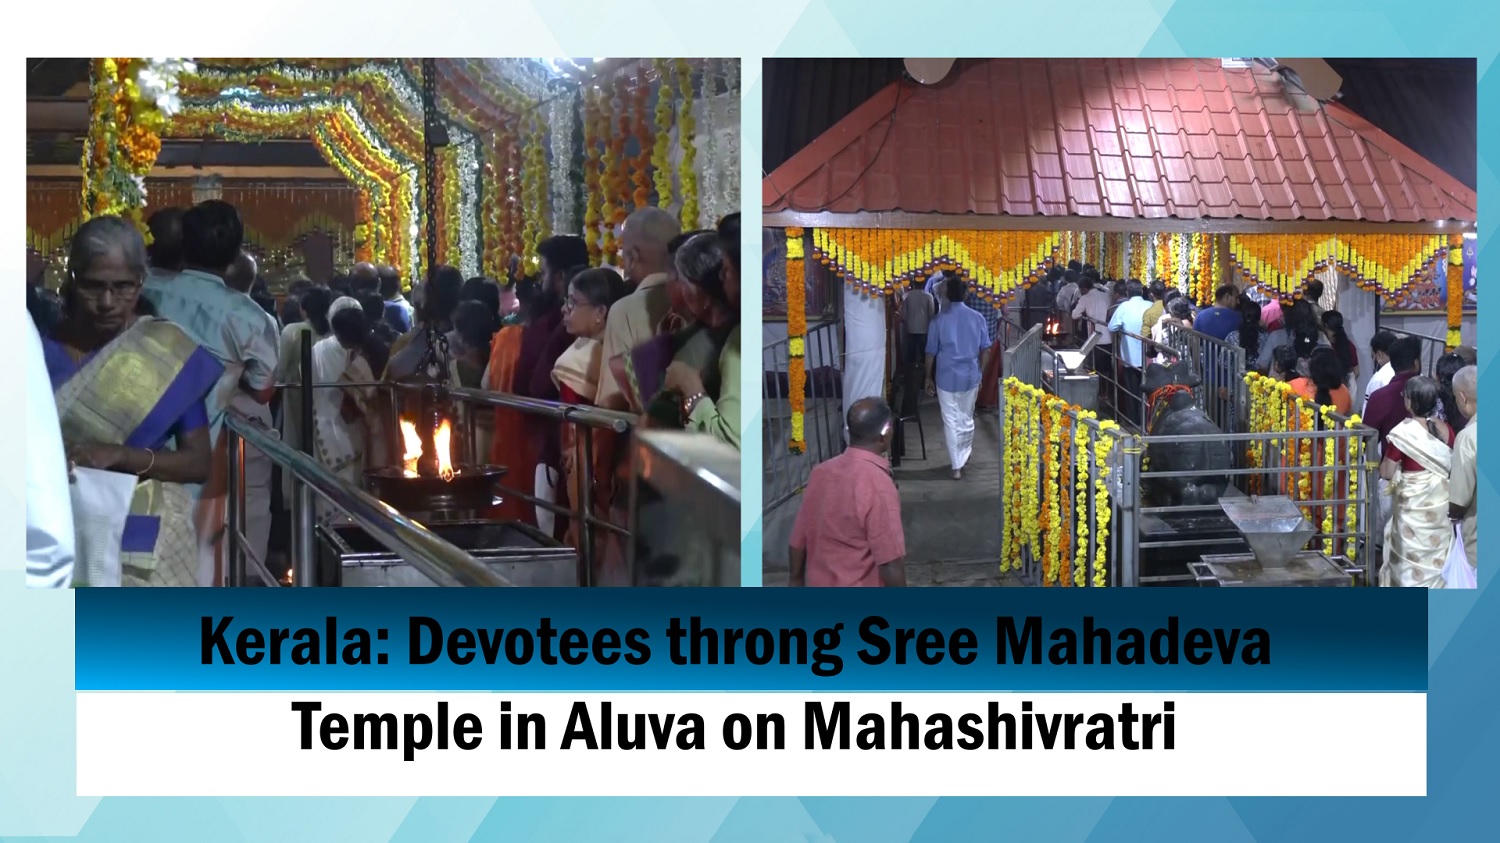 Kerala` Devotees throng Sree Mahadeva Temple in Aluva on Mahashivratri